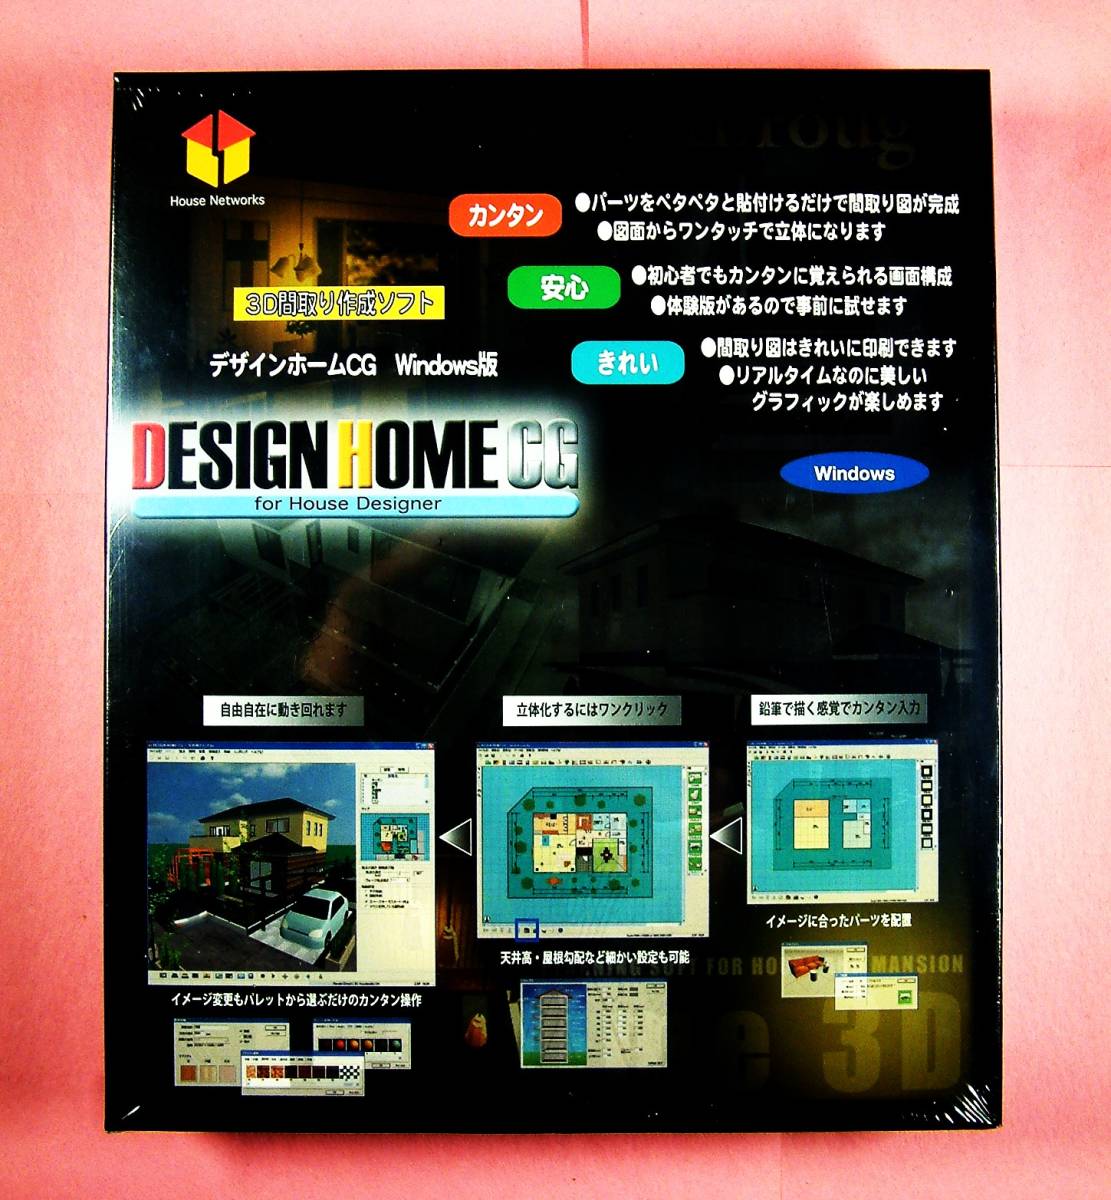 【3805】 ハウスネットワークス Design Home CG for House Desiner 新品 House Networks デザインホームCG 3D間取り図の作成 住宅 ハウス _画像1